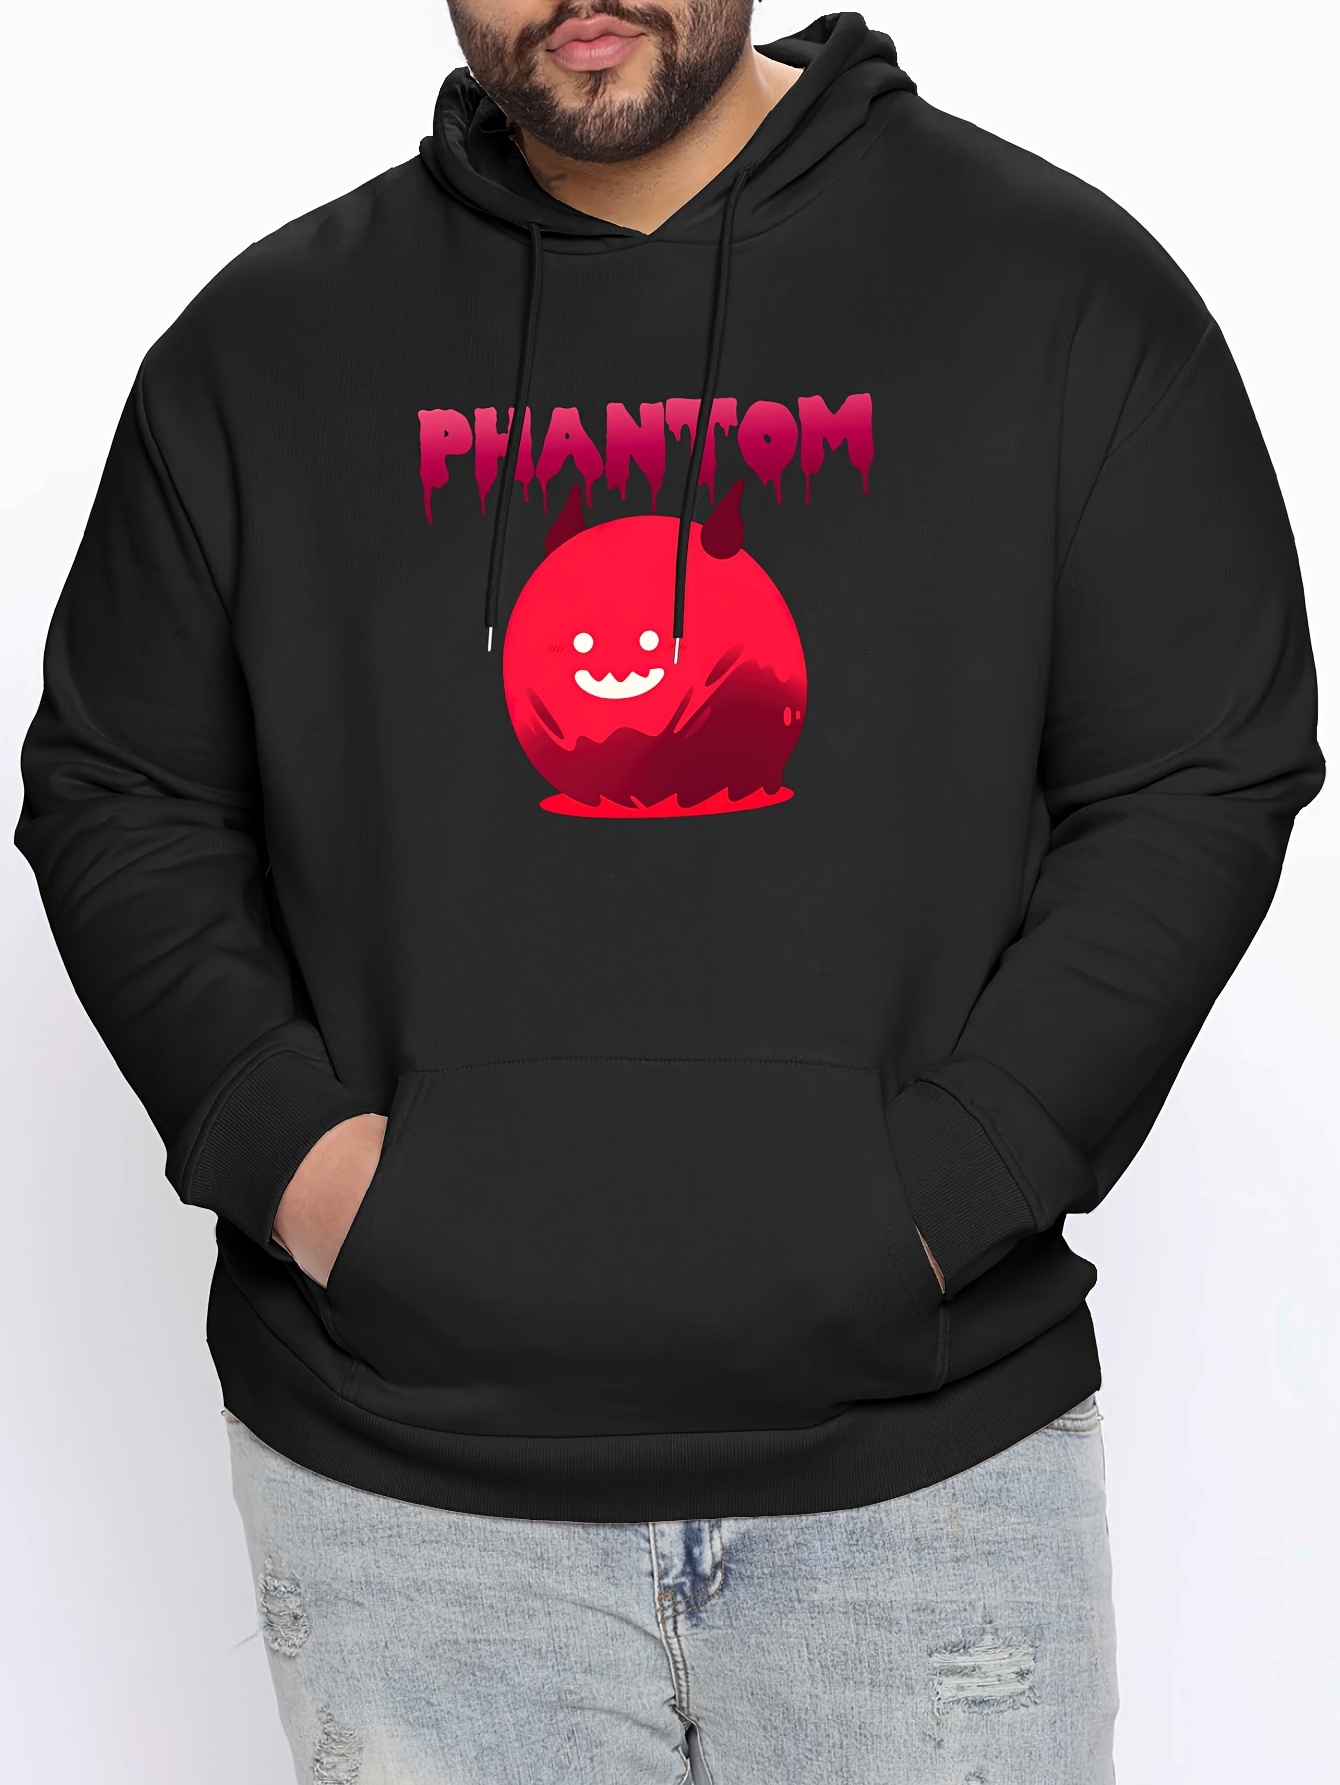 Phantom Hoodie - Black/Red